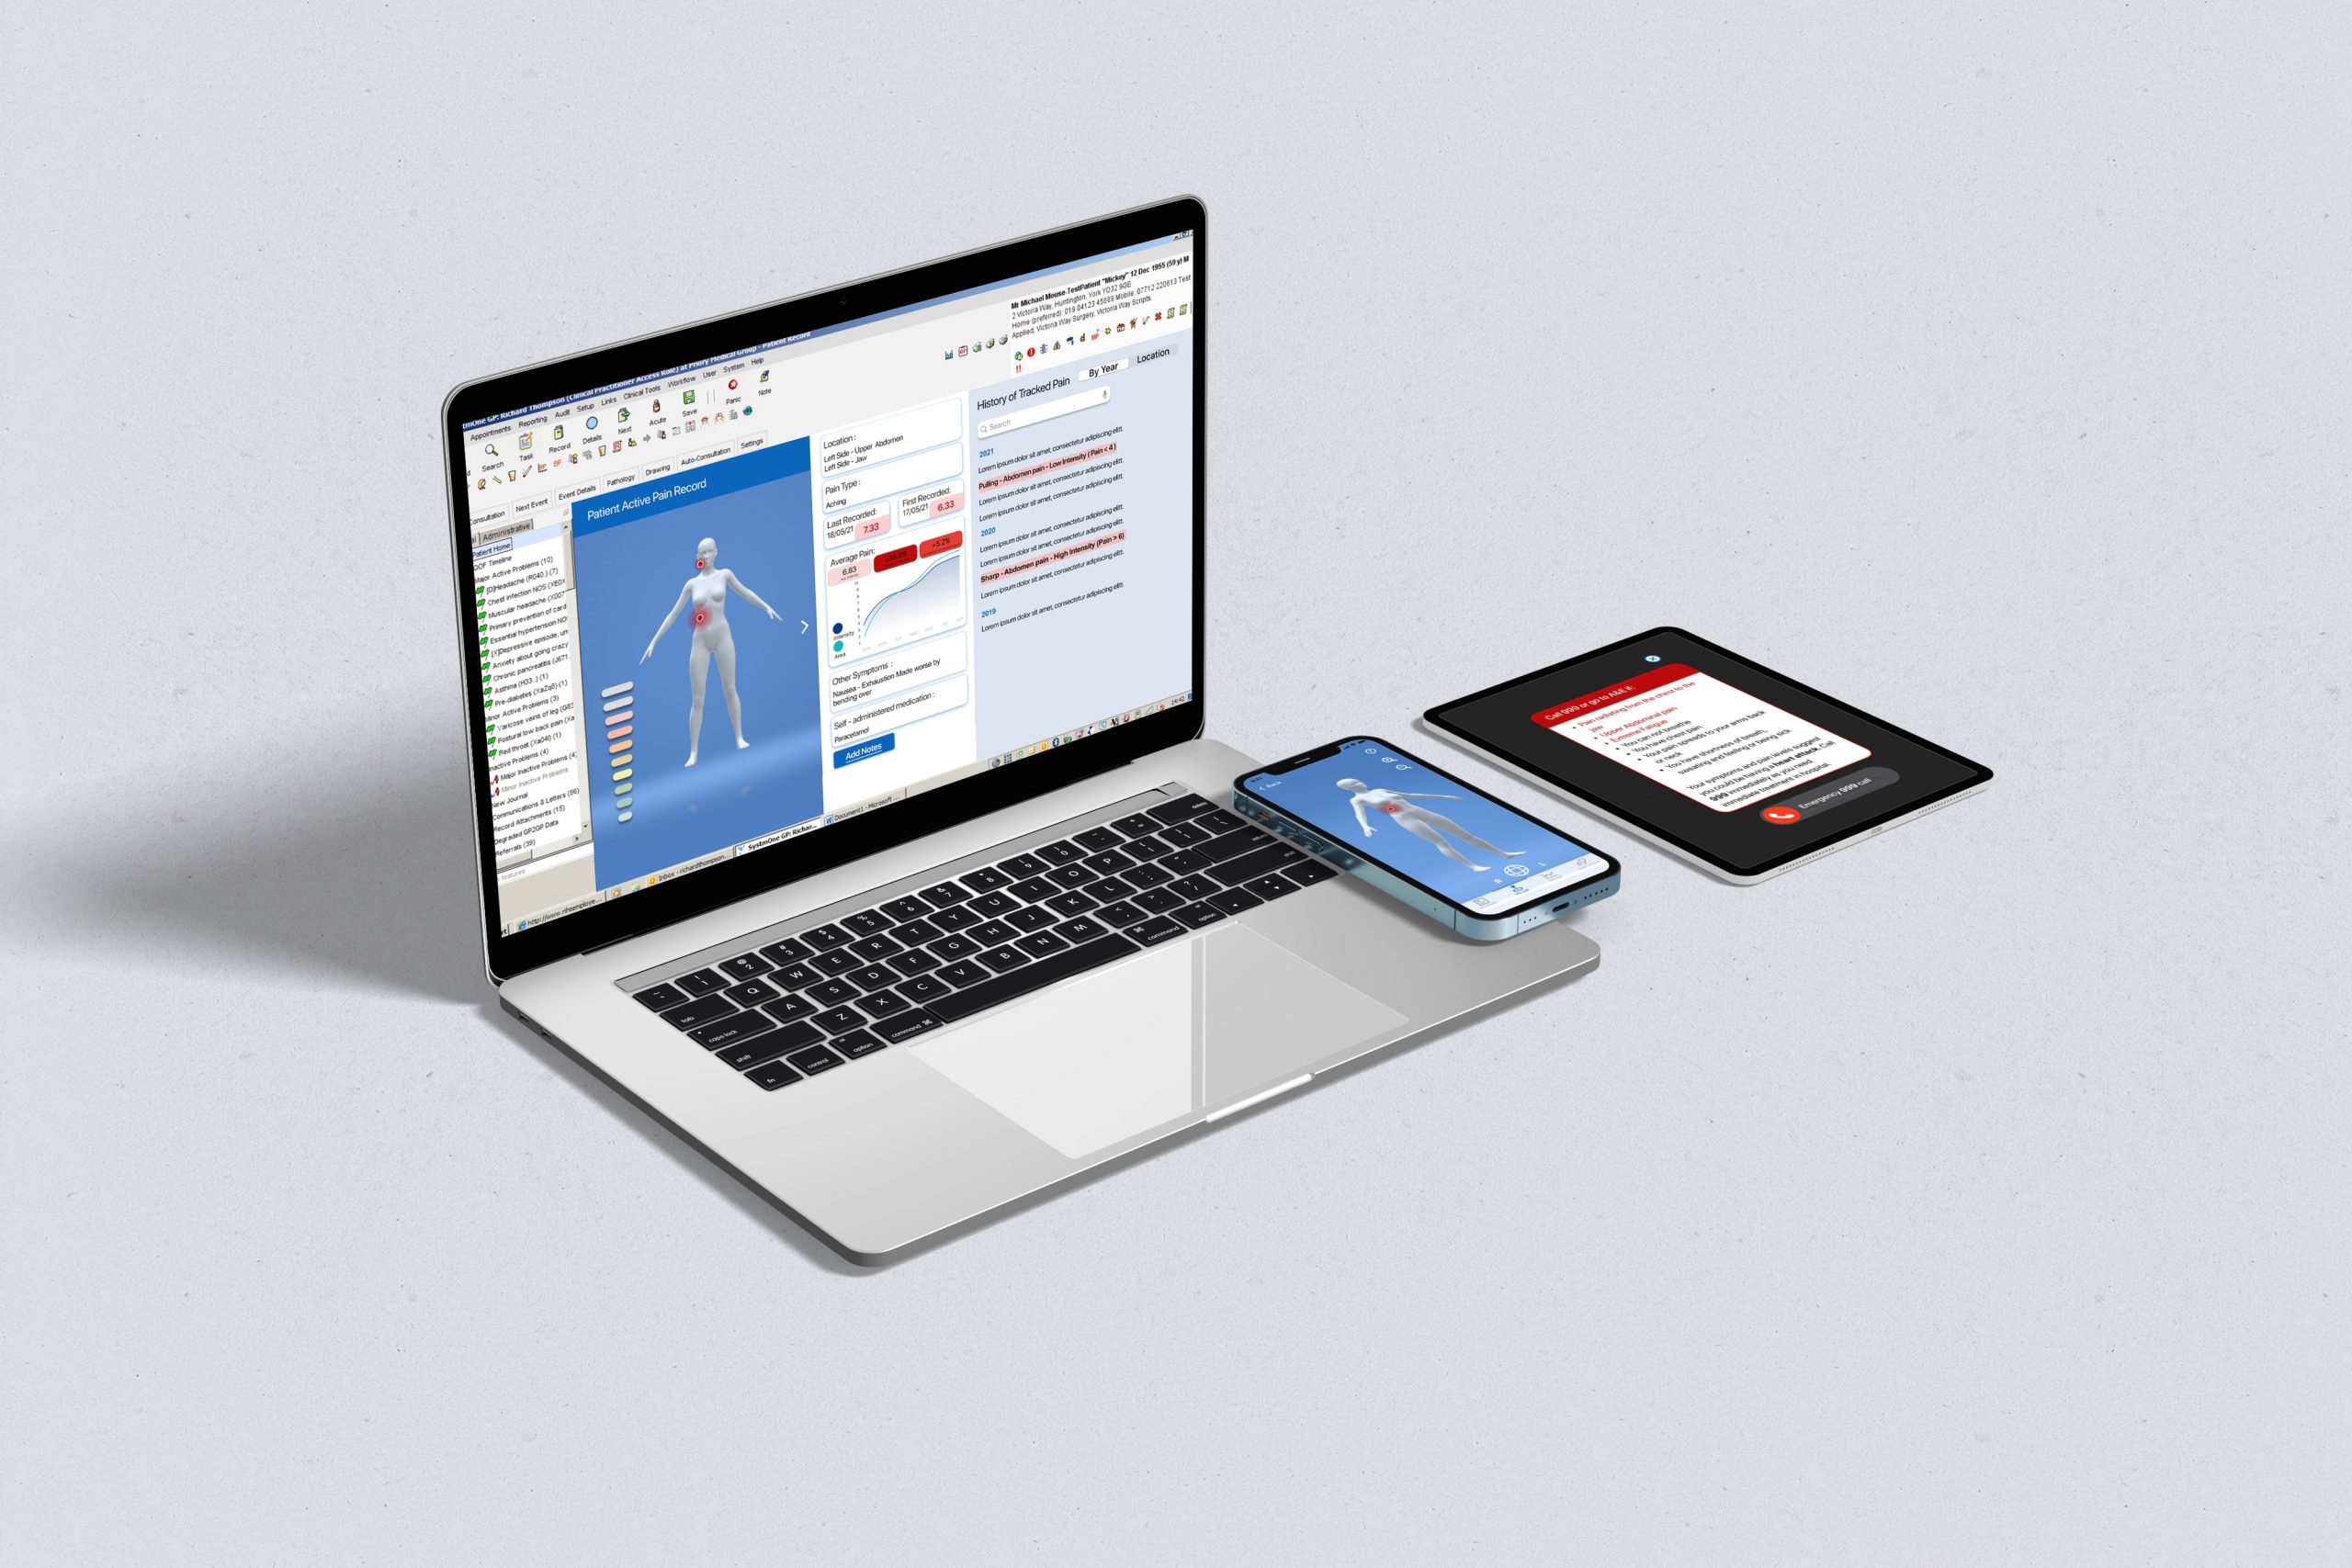 Yentl final concept - Doctors Screen, Iphone, Ipad